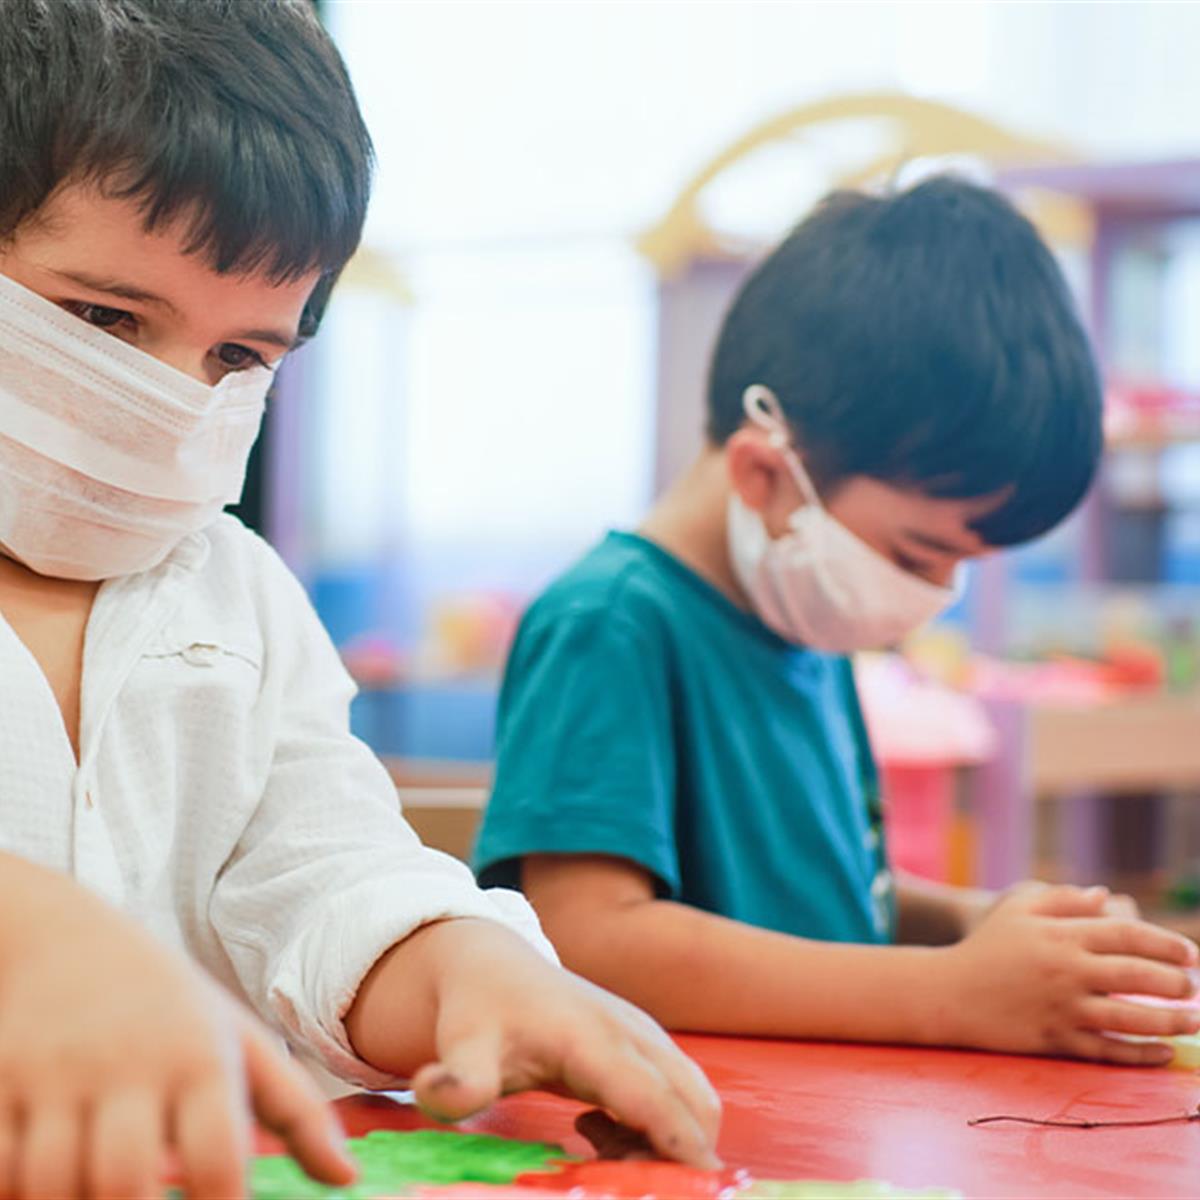 Mascarillas niños durante la pandemia de COVID-19